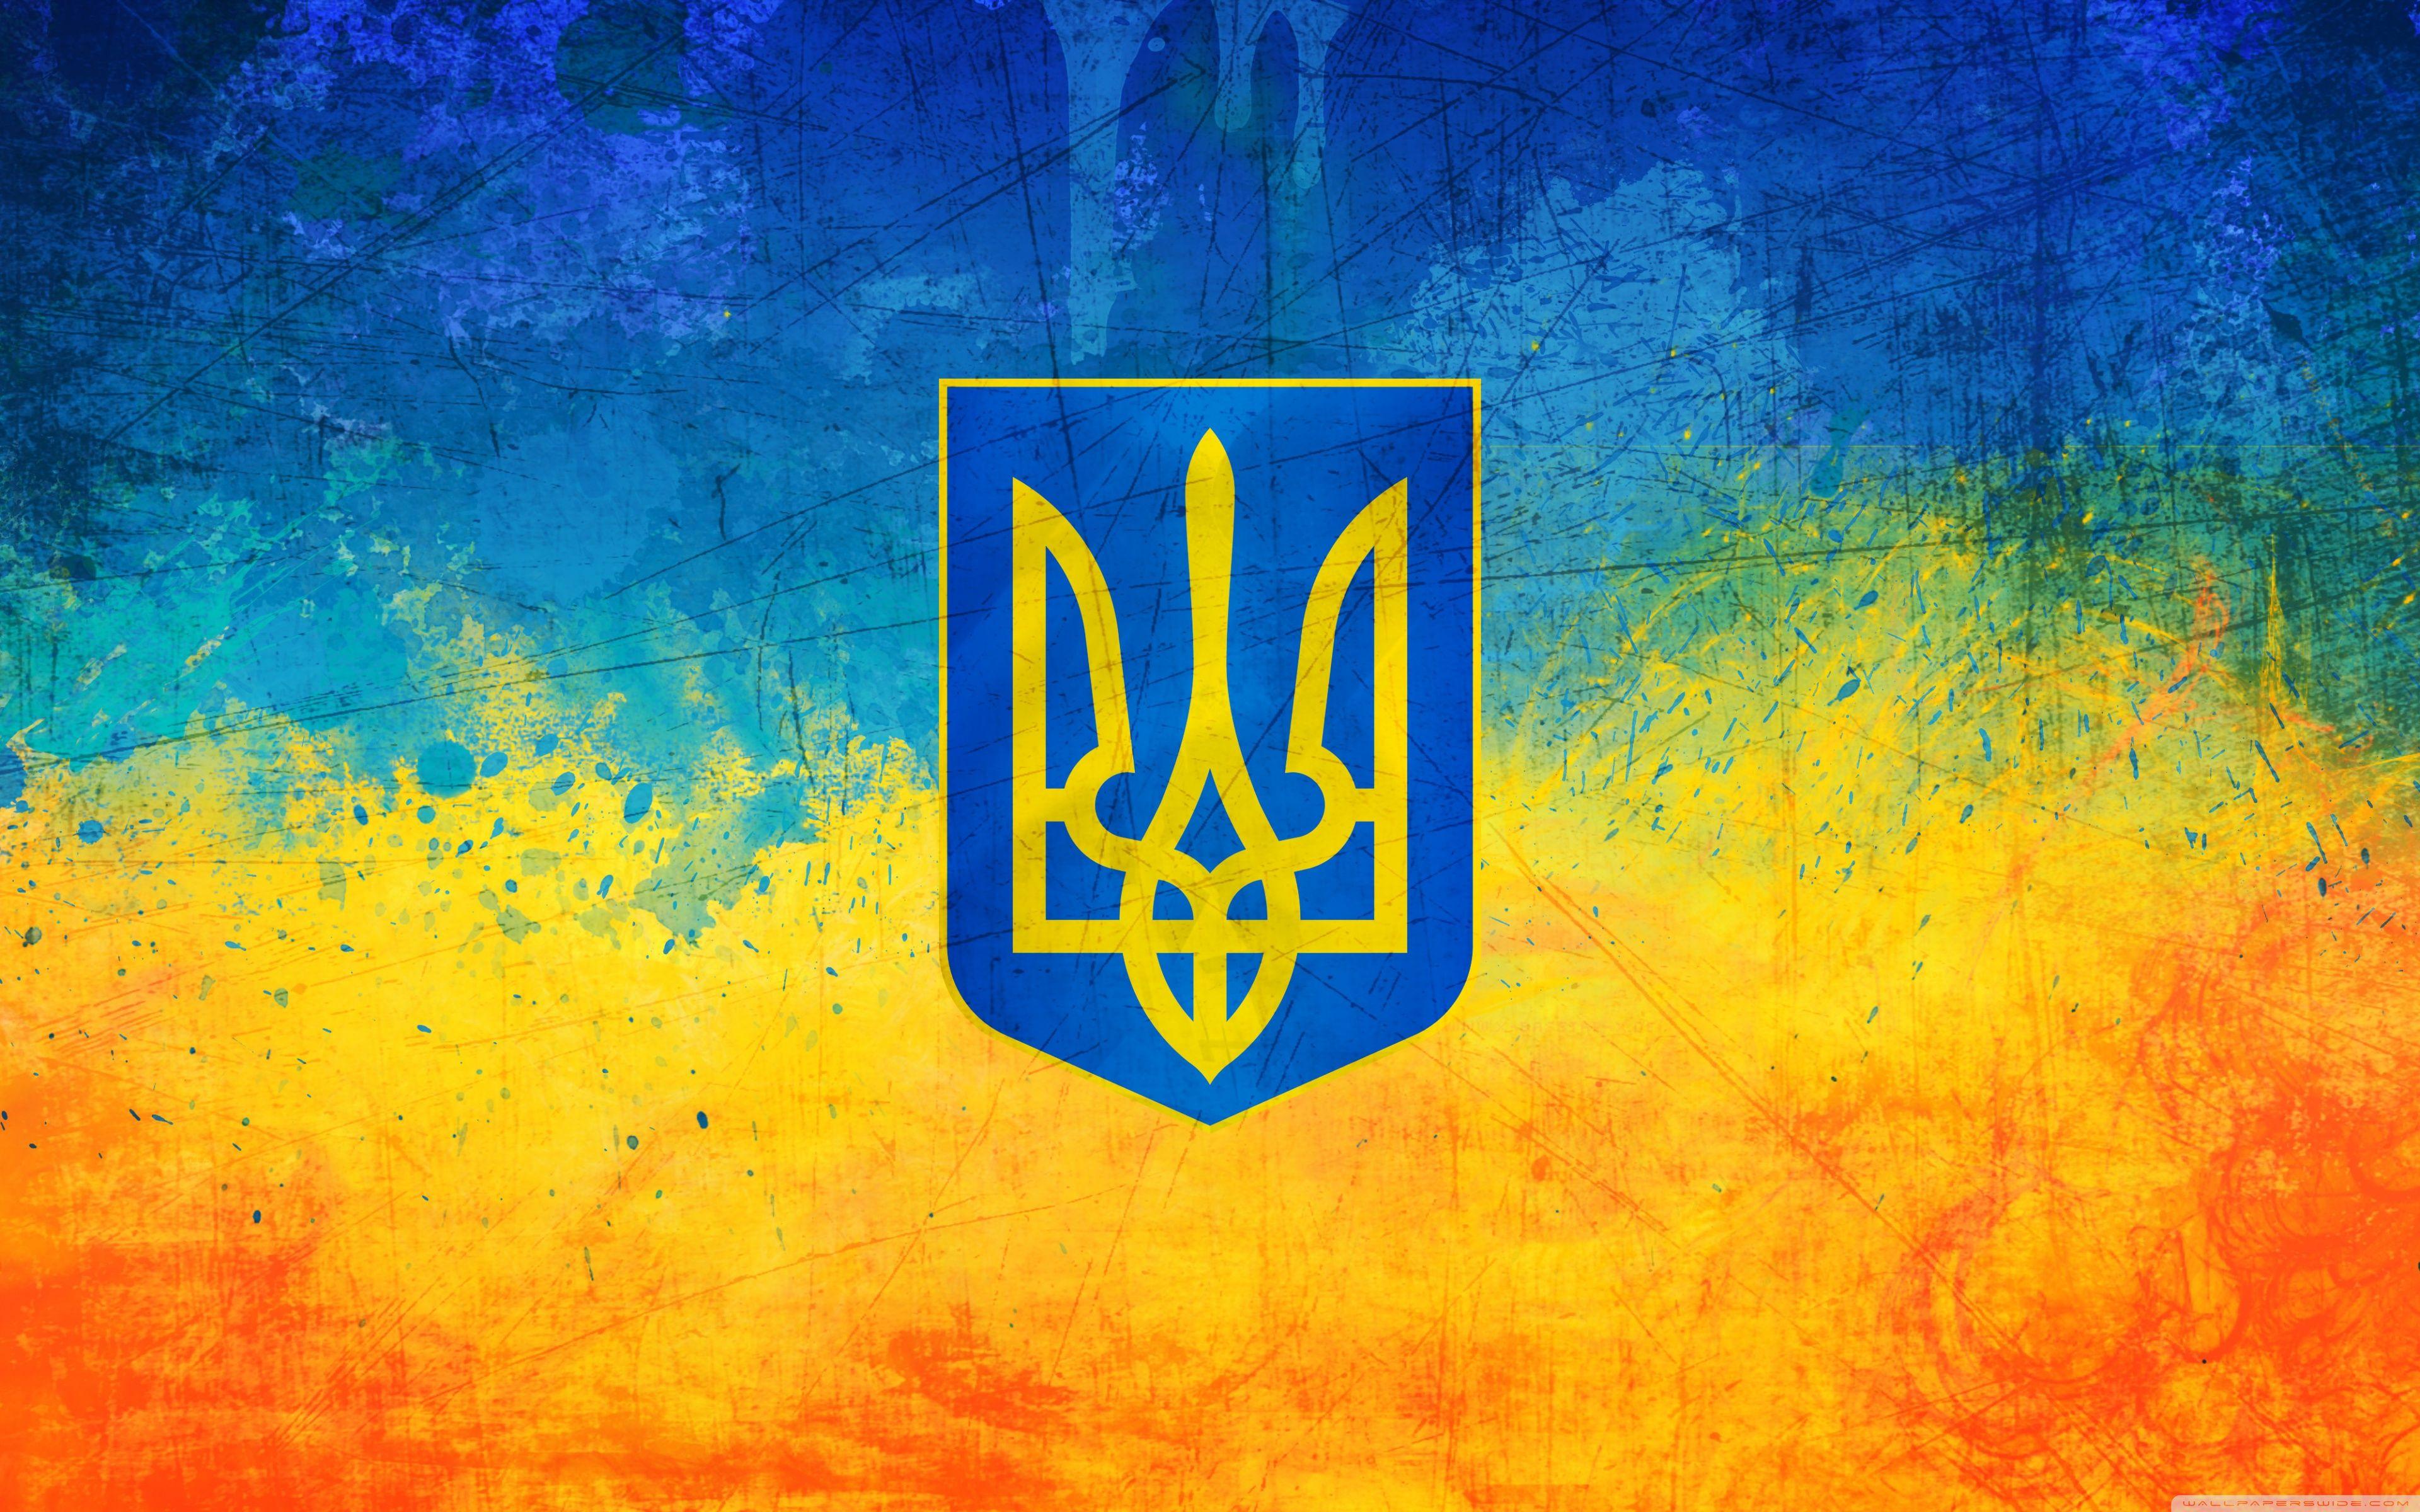 Ukraine Desktop Wallpapers - Top Free Ukraine Desktop Backgrounds